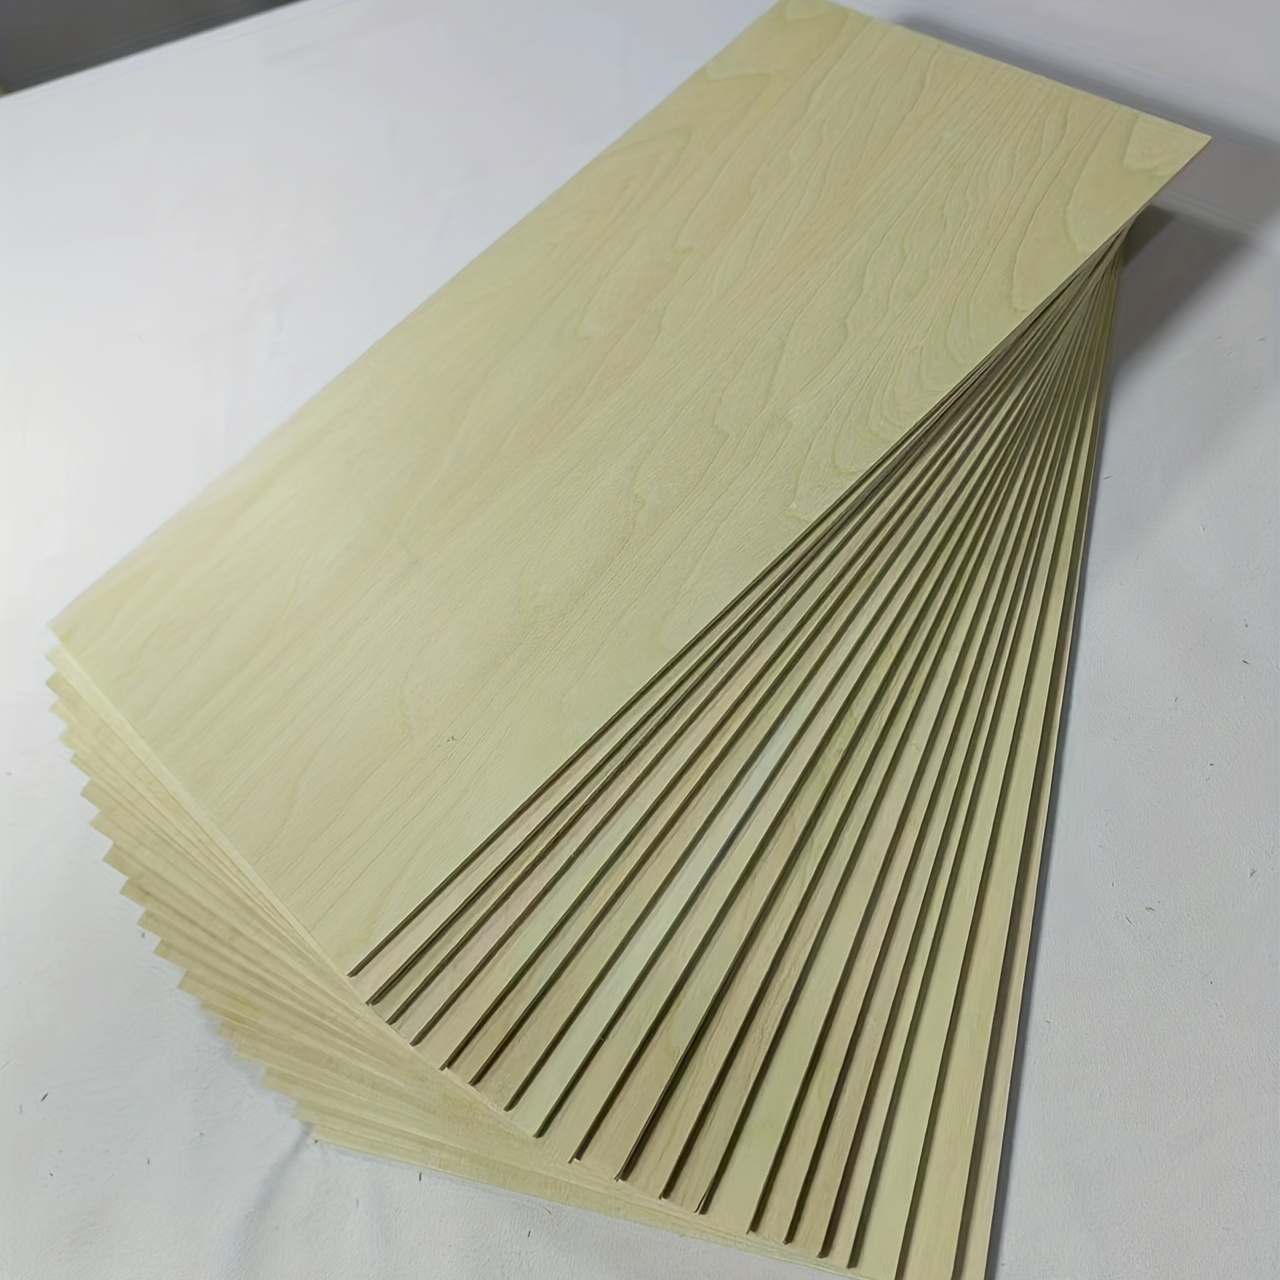 Chapa de madera 3 mm de espesor - Proyectos educativos